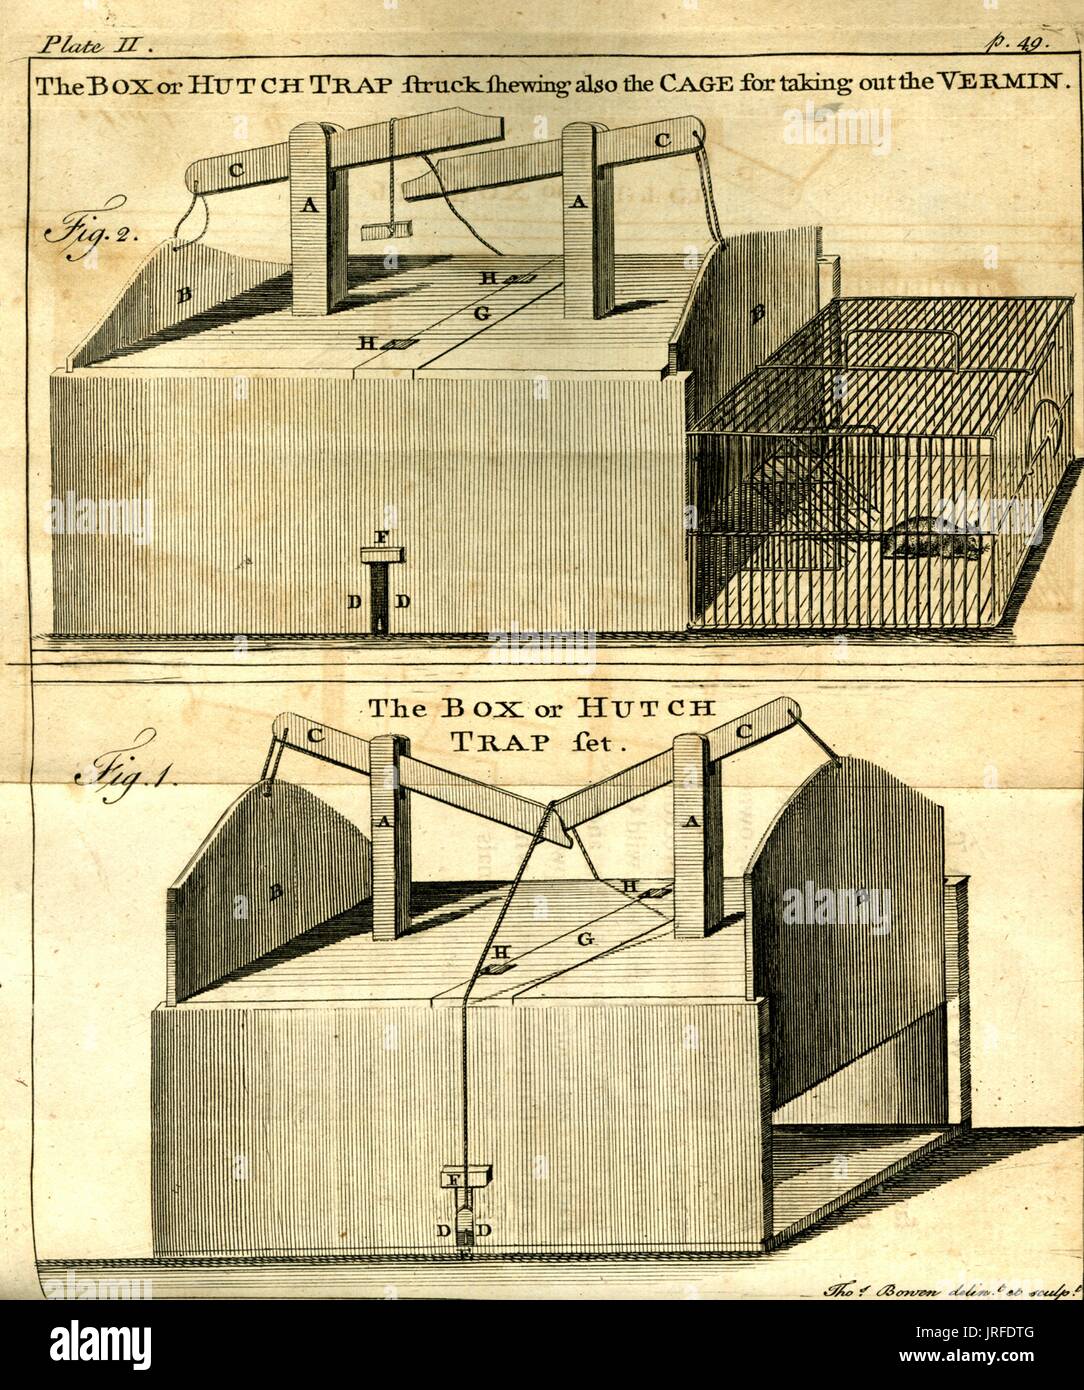 Bessere Mausefalle Zeichnung, technische Zeichnungen der Erfindung, eine bessere Mausefalle, zeigen mehrere Methoden, die den Trap verwendet Ungeziefer, 1841 zu fangen. Stockfoto